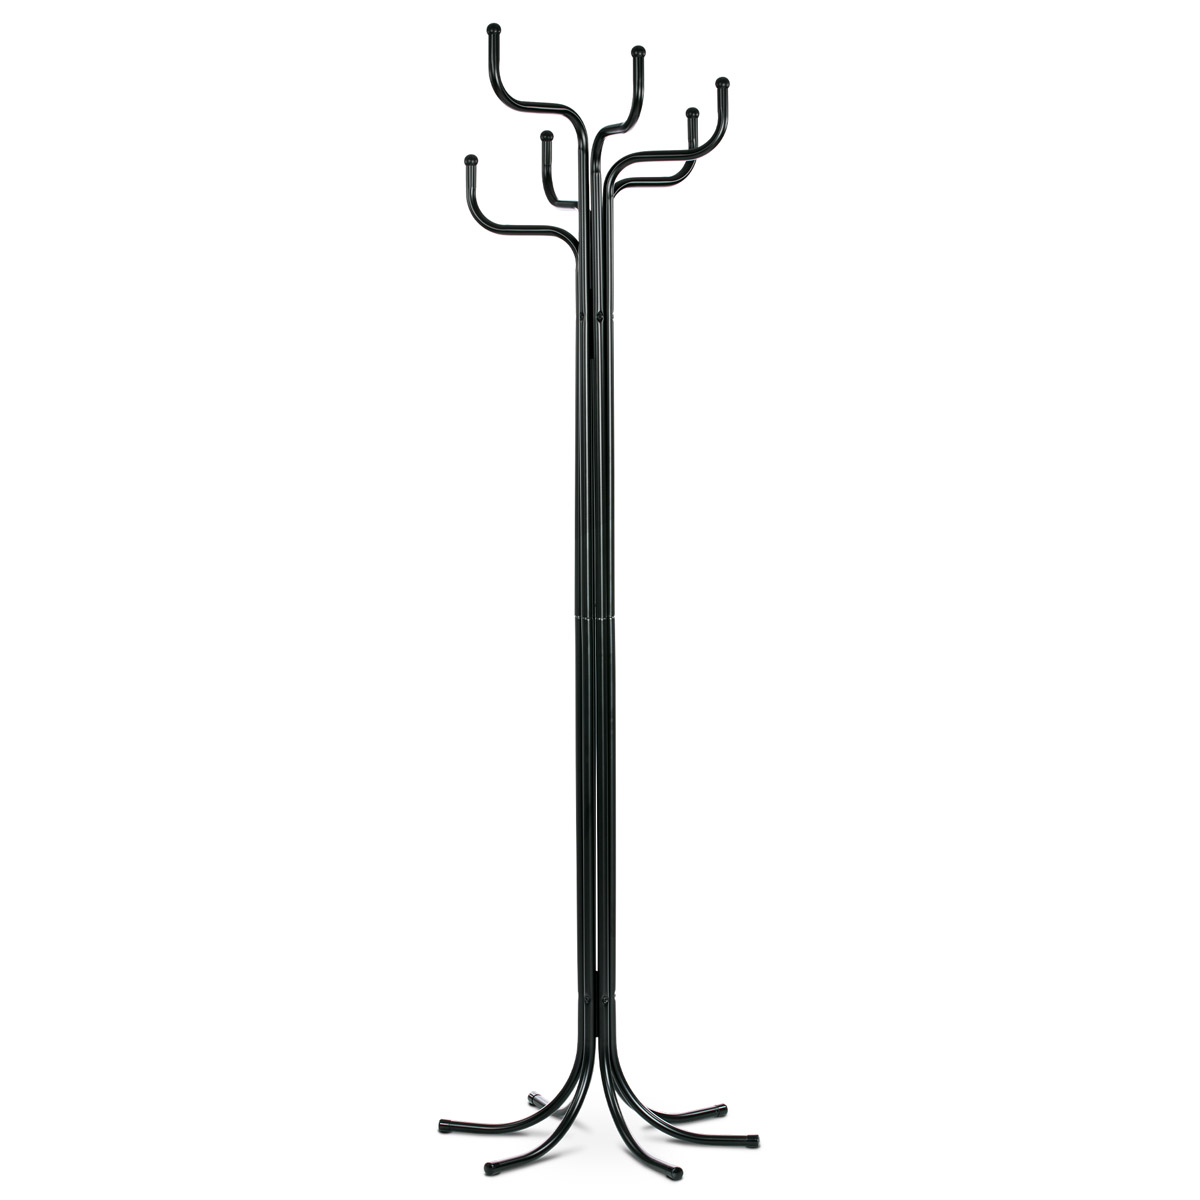 Věšák stojanový, kovová konstrukce, černý matný lak, výška 188 cm, nosnost 12 kg